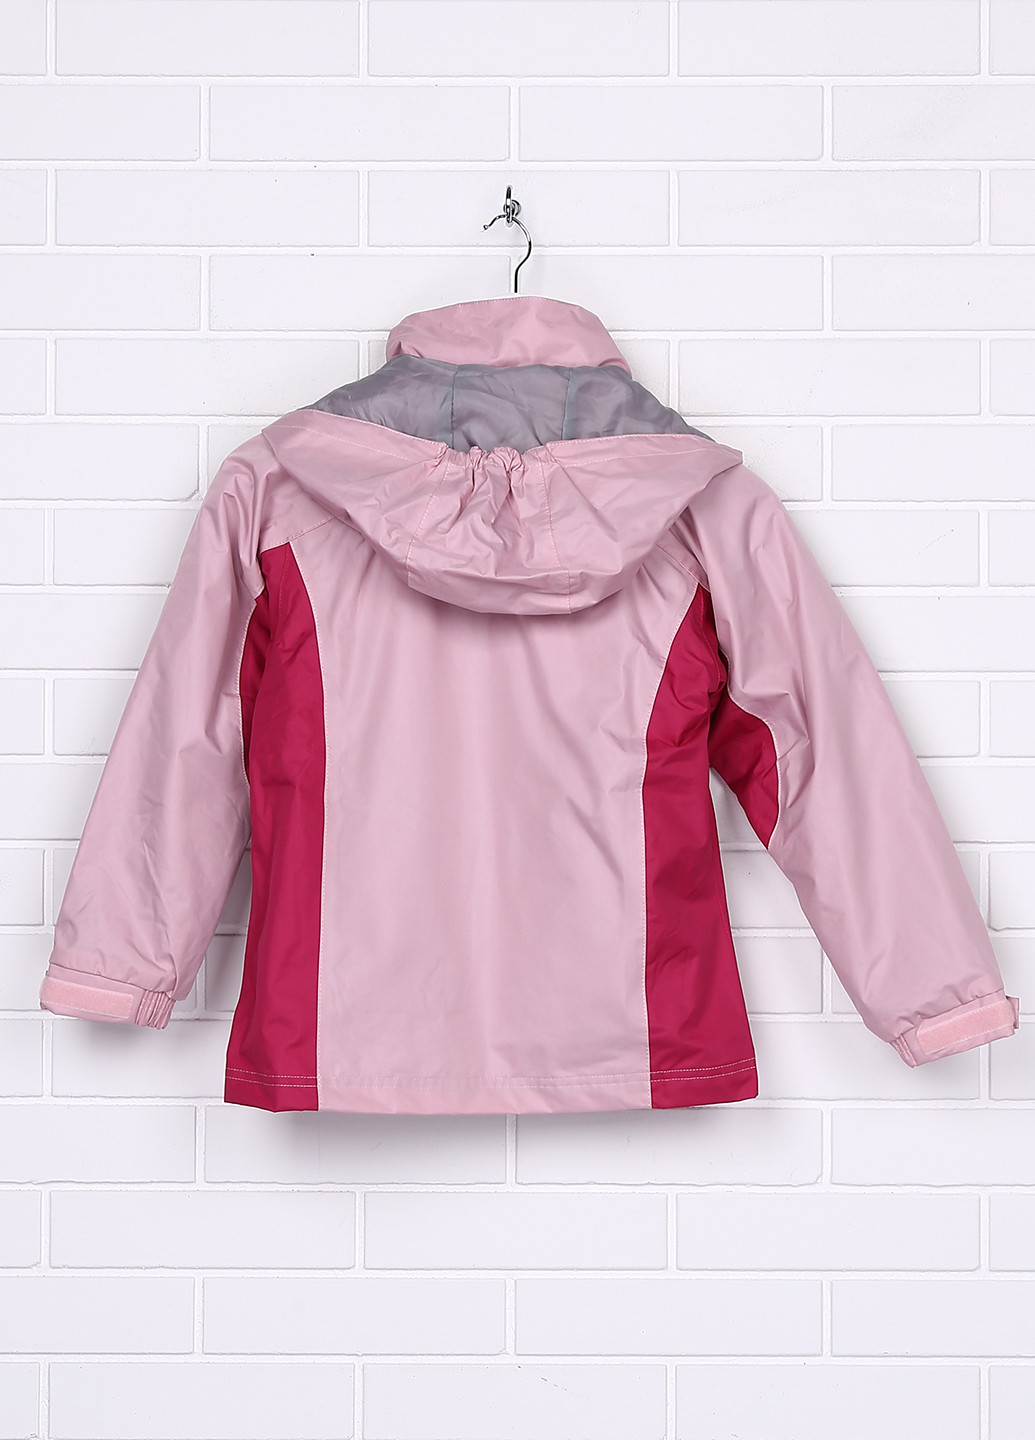 Світло-рожева демісезонна куртка Trespass